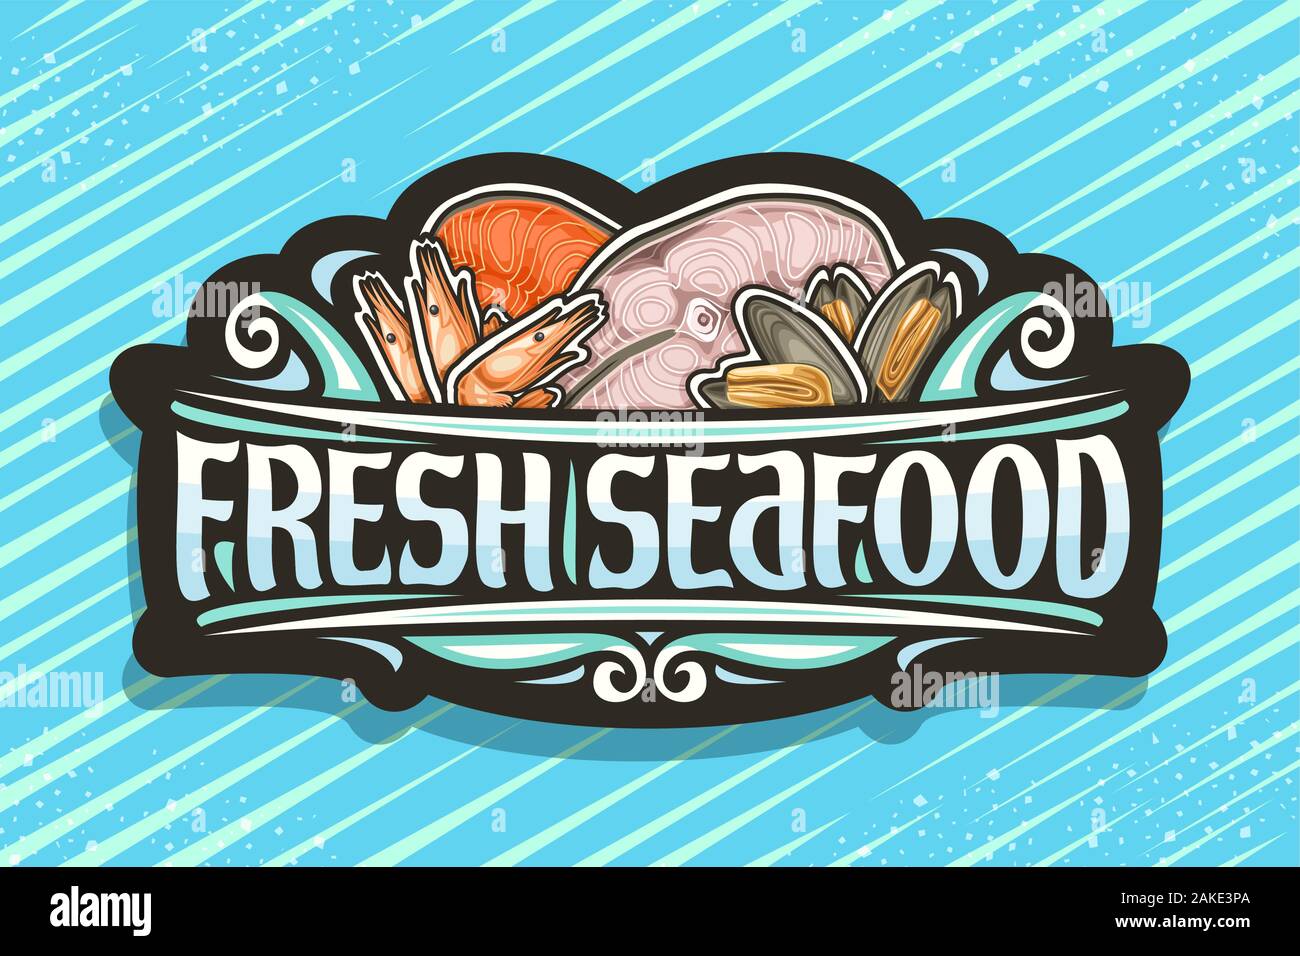 Vektor logo für frische Meeresfrüchte, schwarz vintage Schild mit Abbildung der geschnittenen Teile der sortierten gedünsteter Fisch, gekochte Garnelen und Muscheln, Brus Stock Vektor